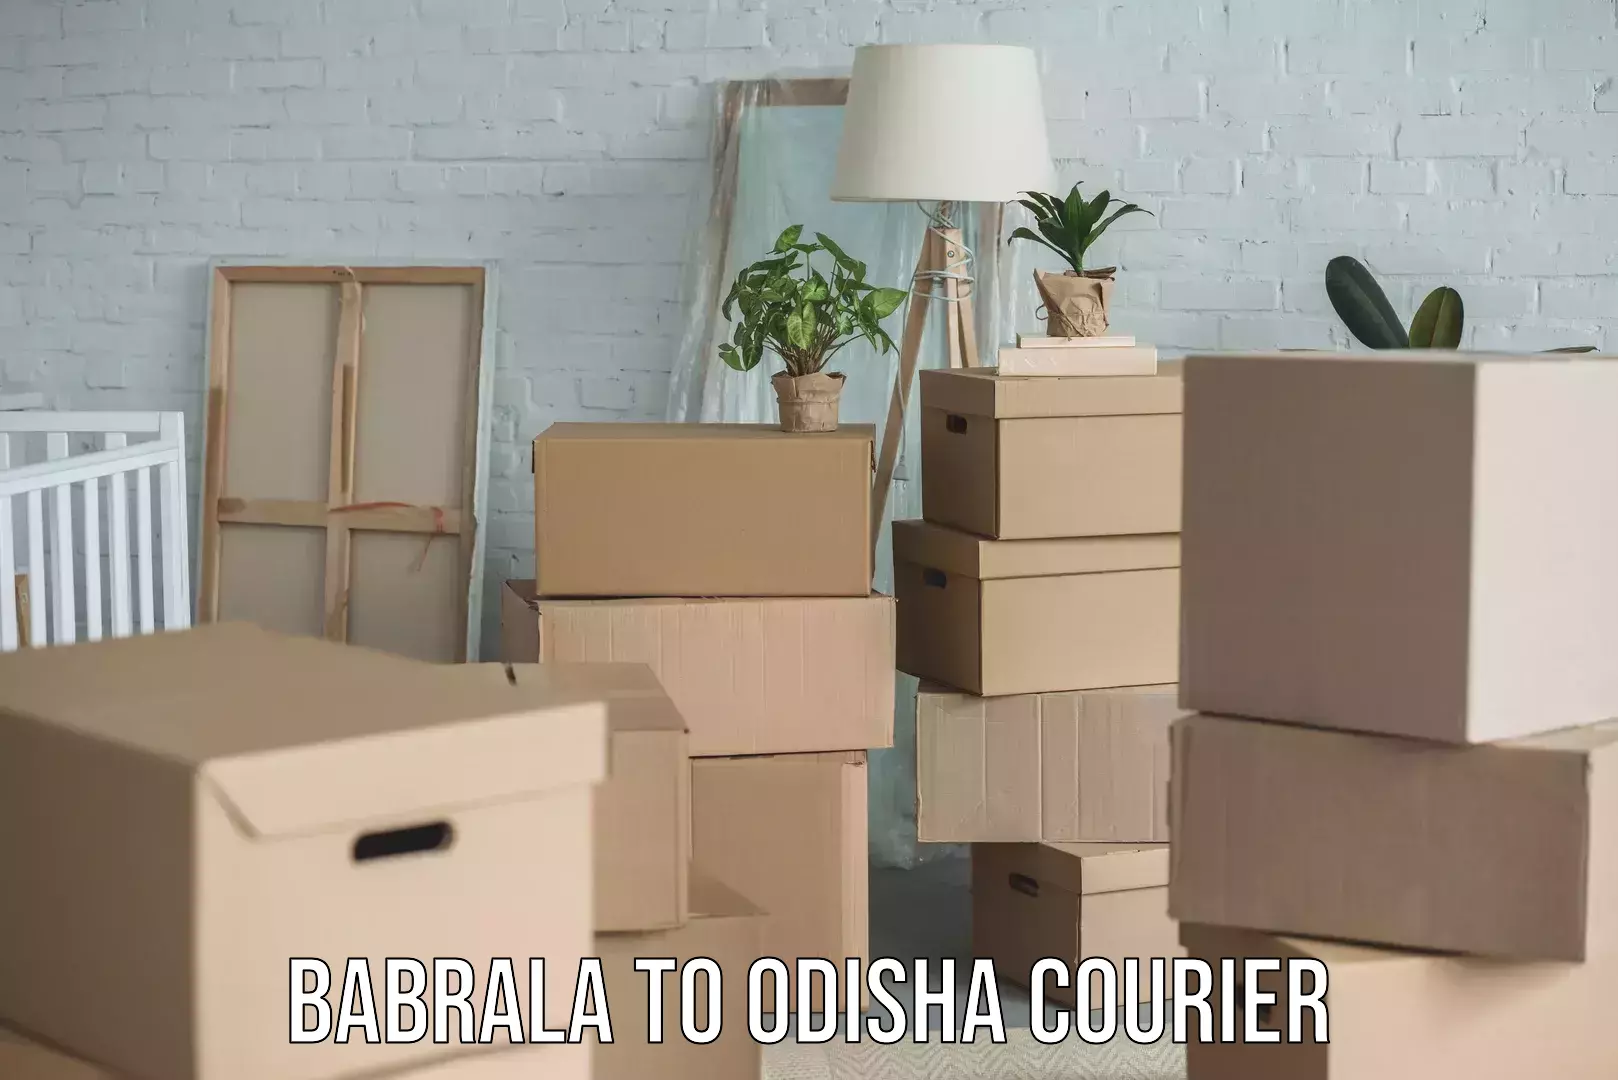 Local courier options Babrala to Odisha